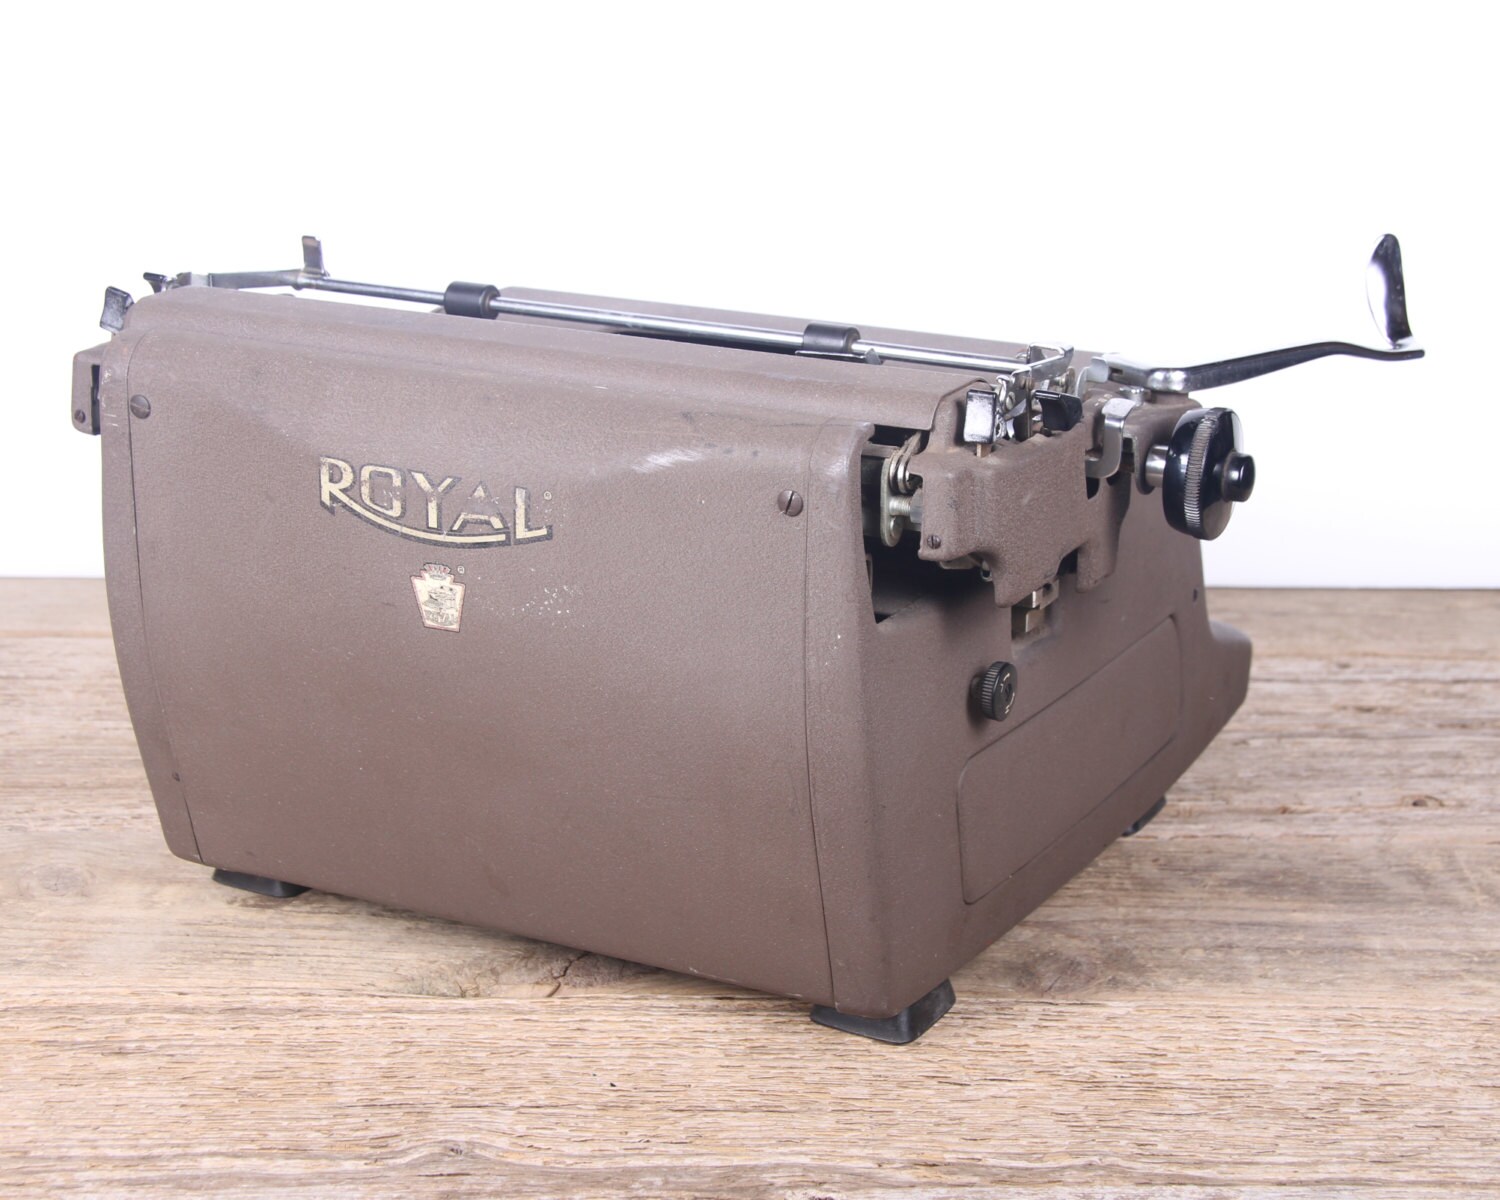 Vintage 1959 Model HH Royal Typewriter / Working Manual Typewriter